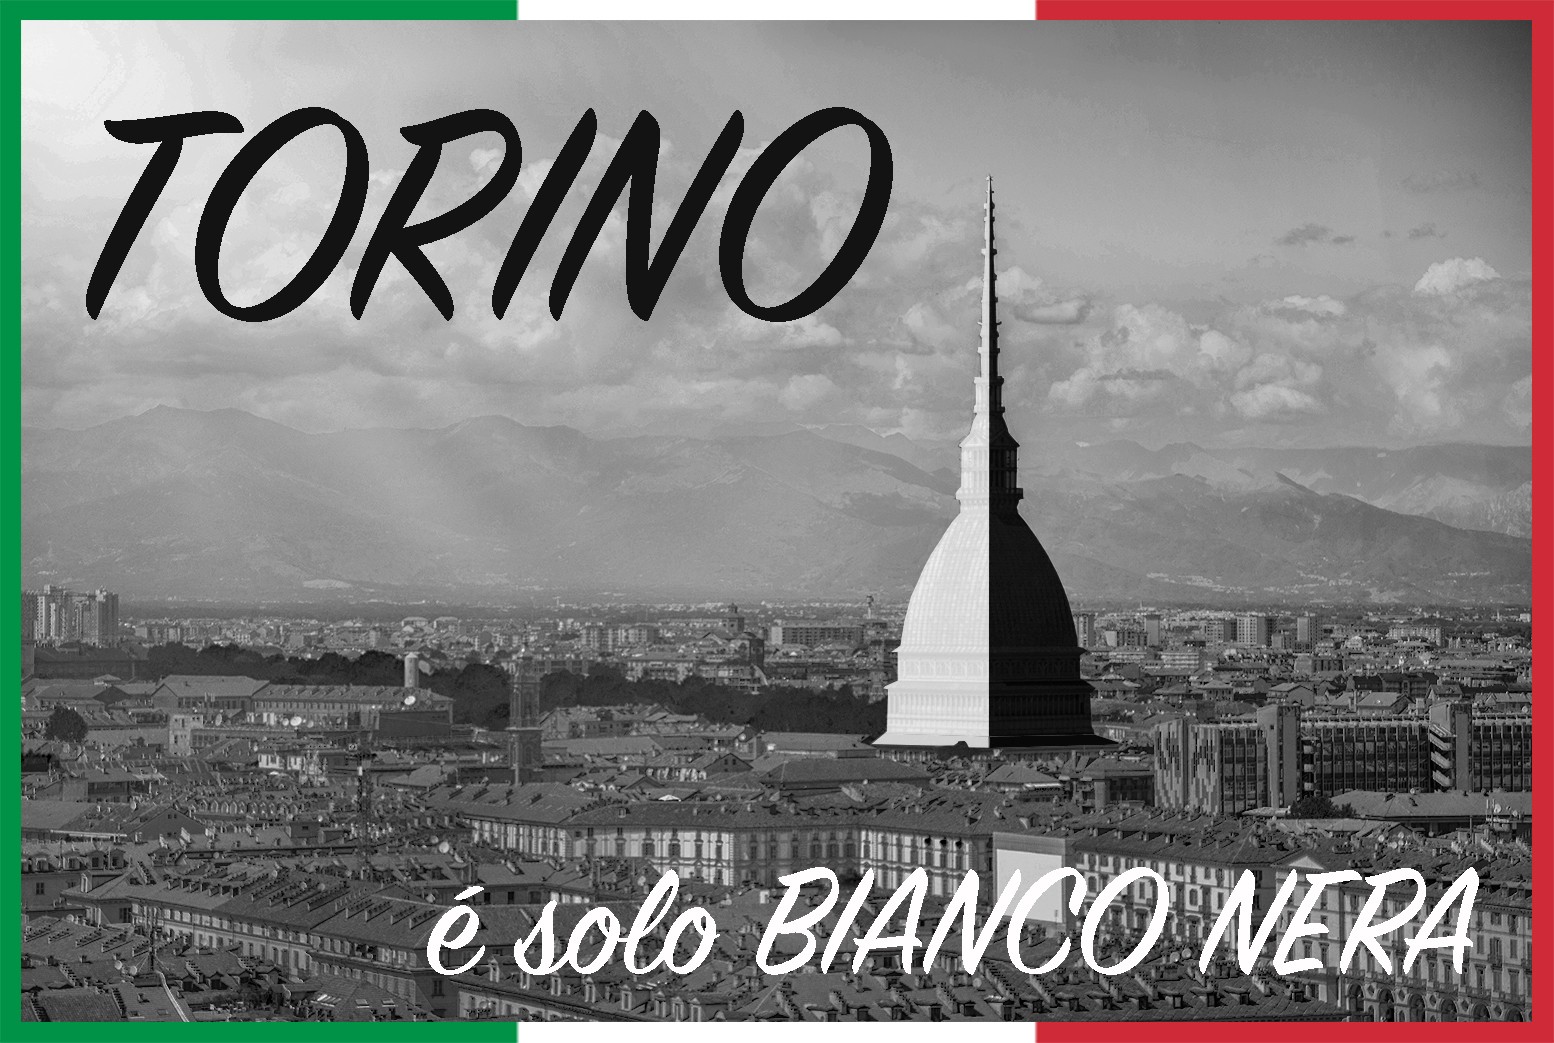 90 X 170 Originale Juventus con Zaino PORTATELO e Cartolina Torino È tex family Telo Mare Sport Juve Scritta Misura Grande Cm